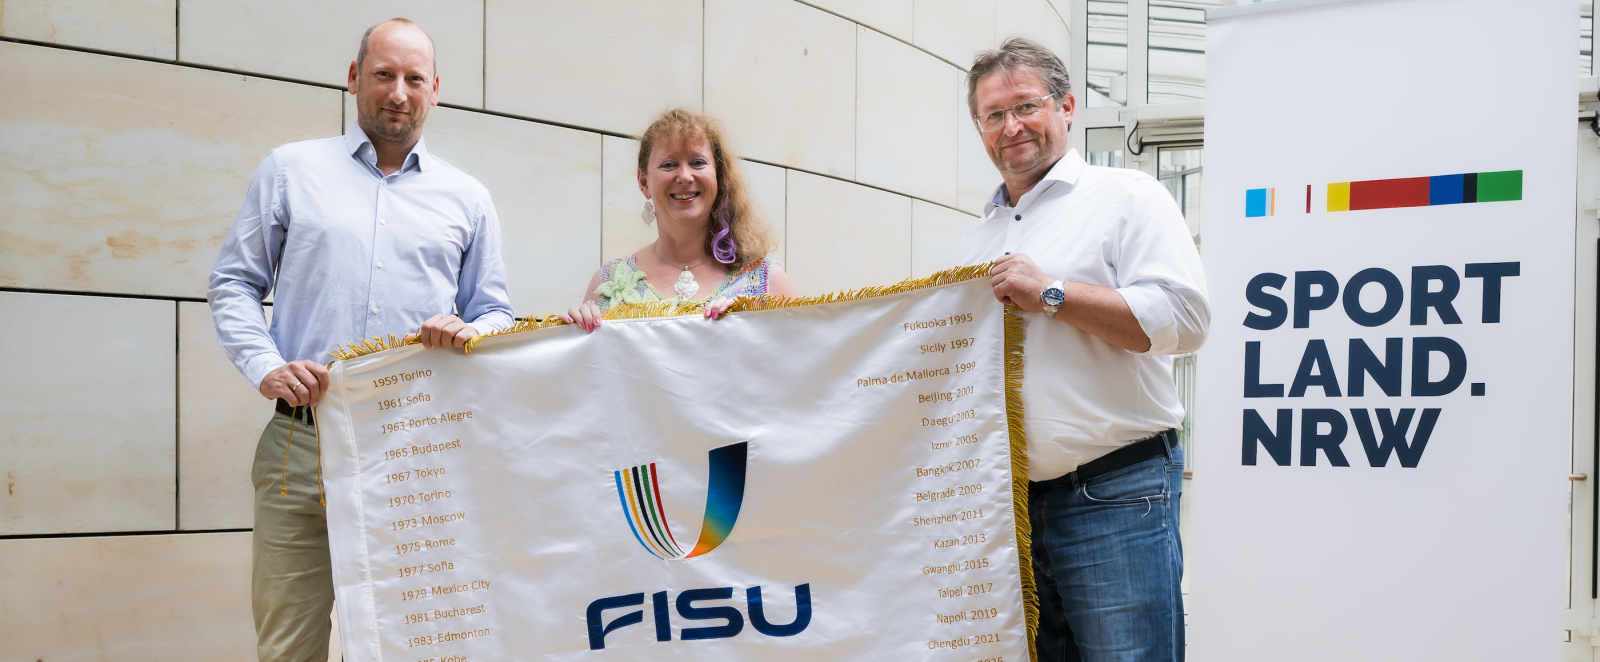 Andrea Milz und zwei Männer mit FISU-Flagge